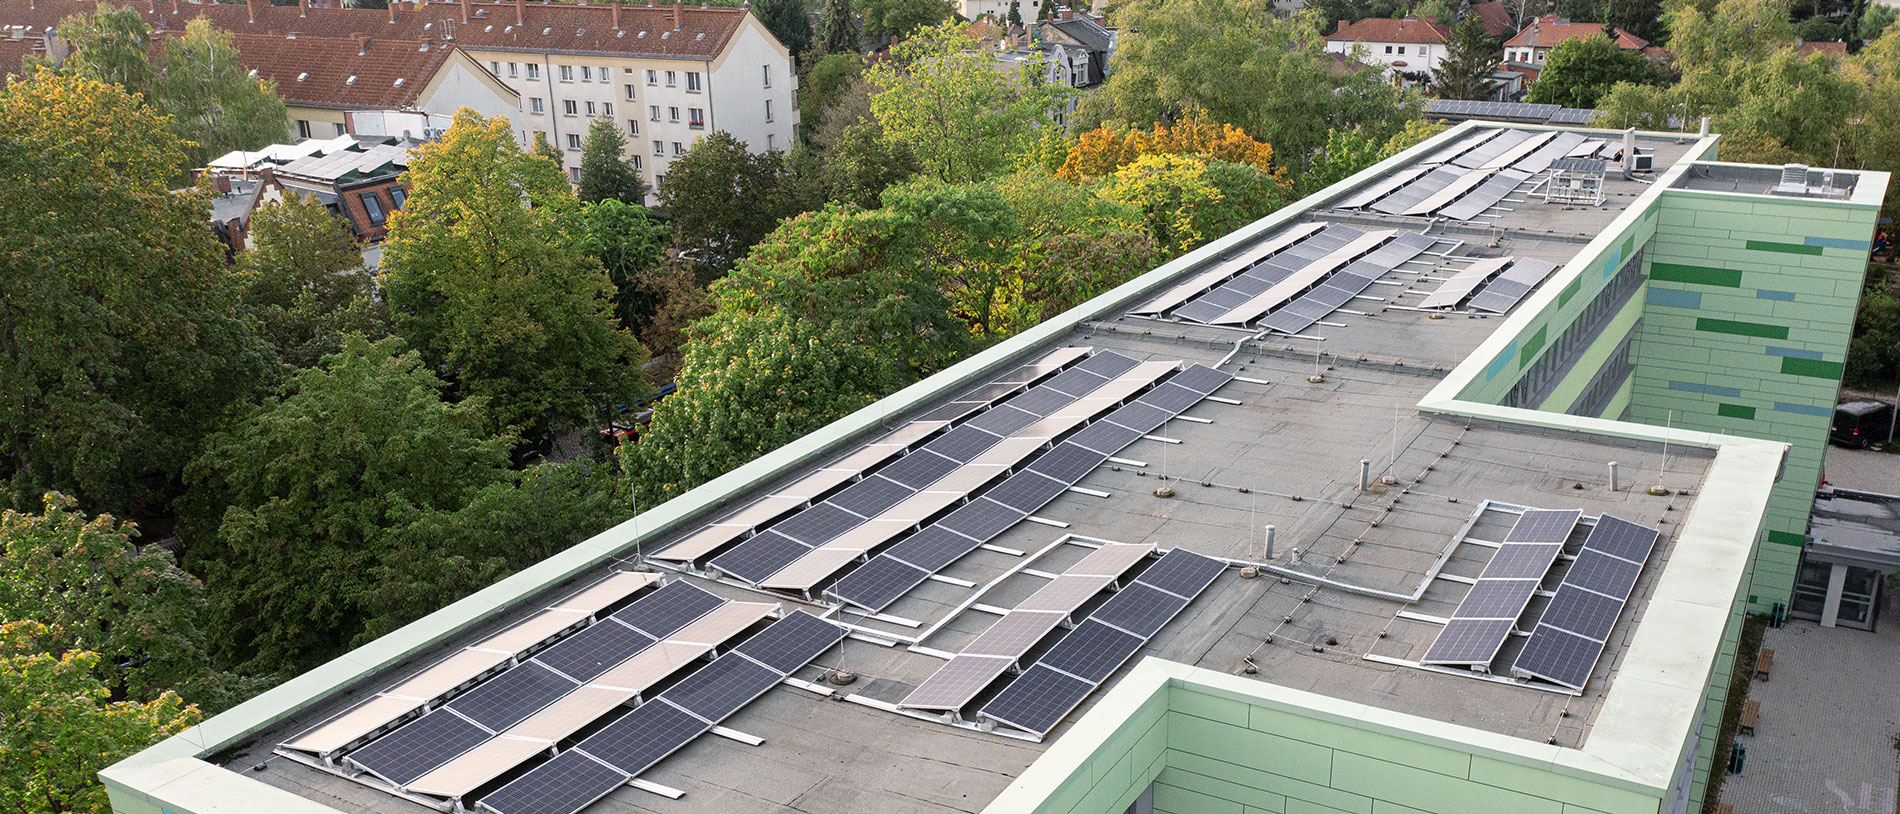 Ansicht eines kleinen  Dorfes in Deutschland mit vielen Solaranlagen auf Dächern